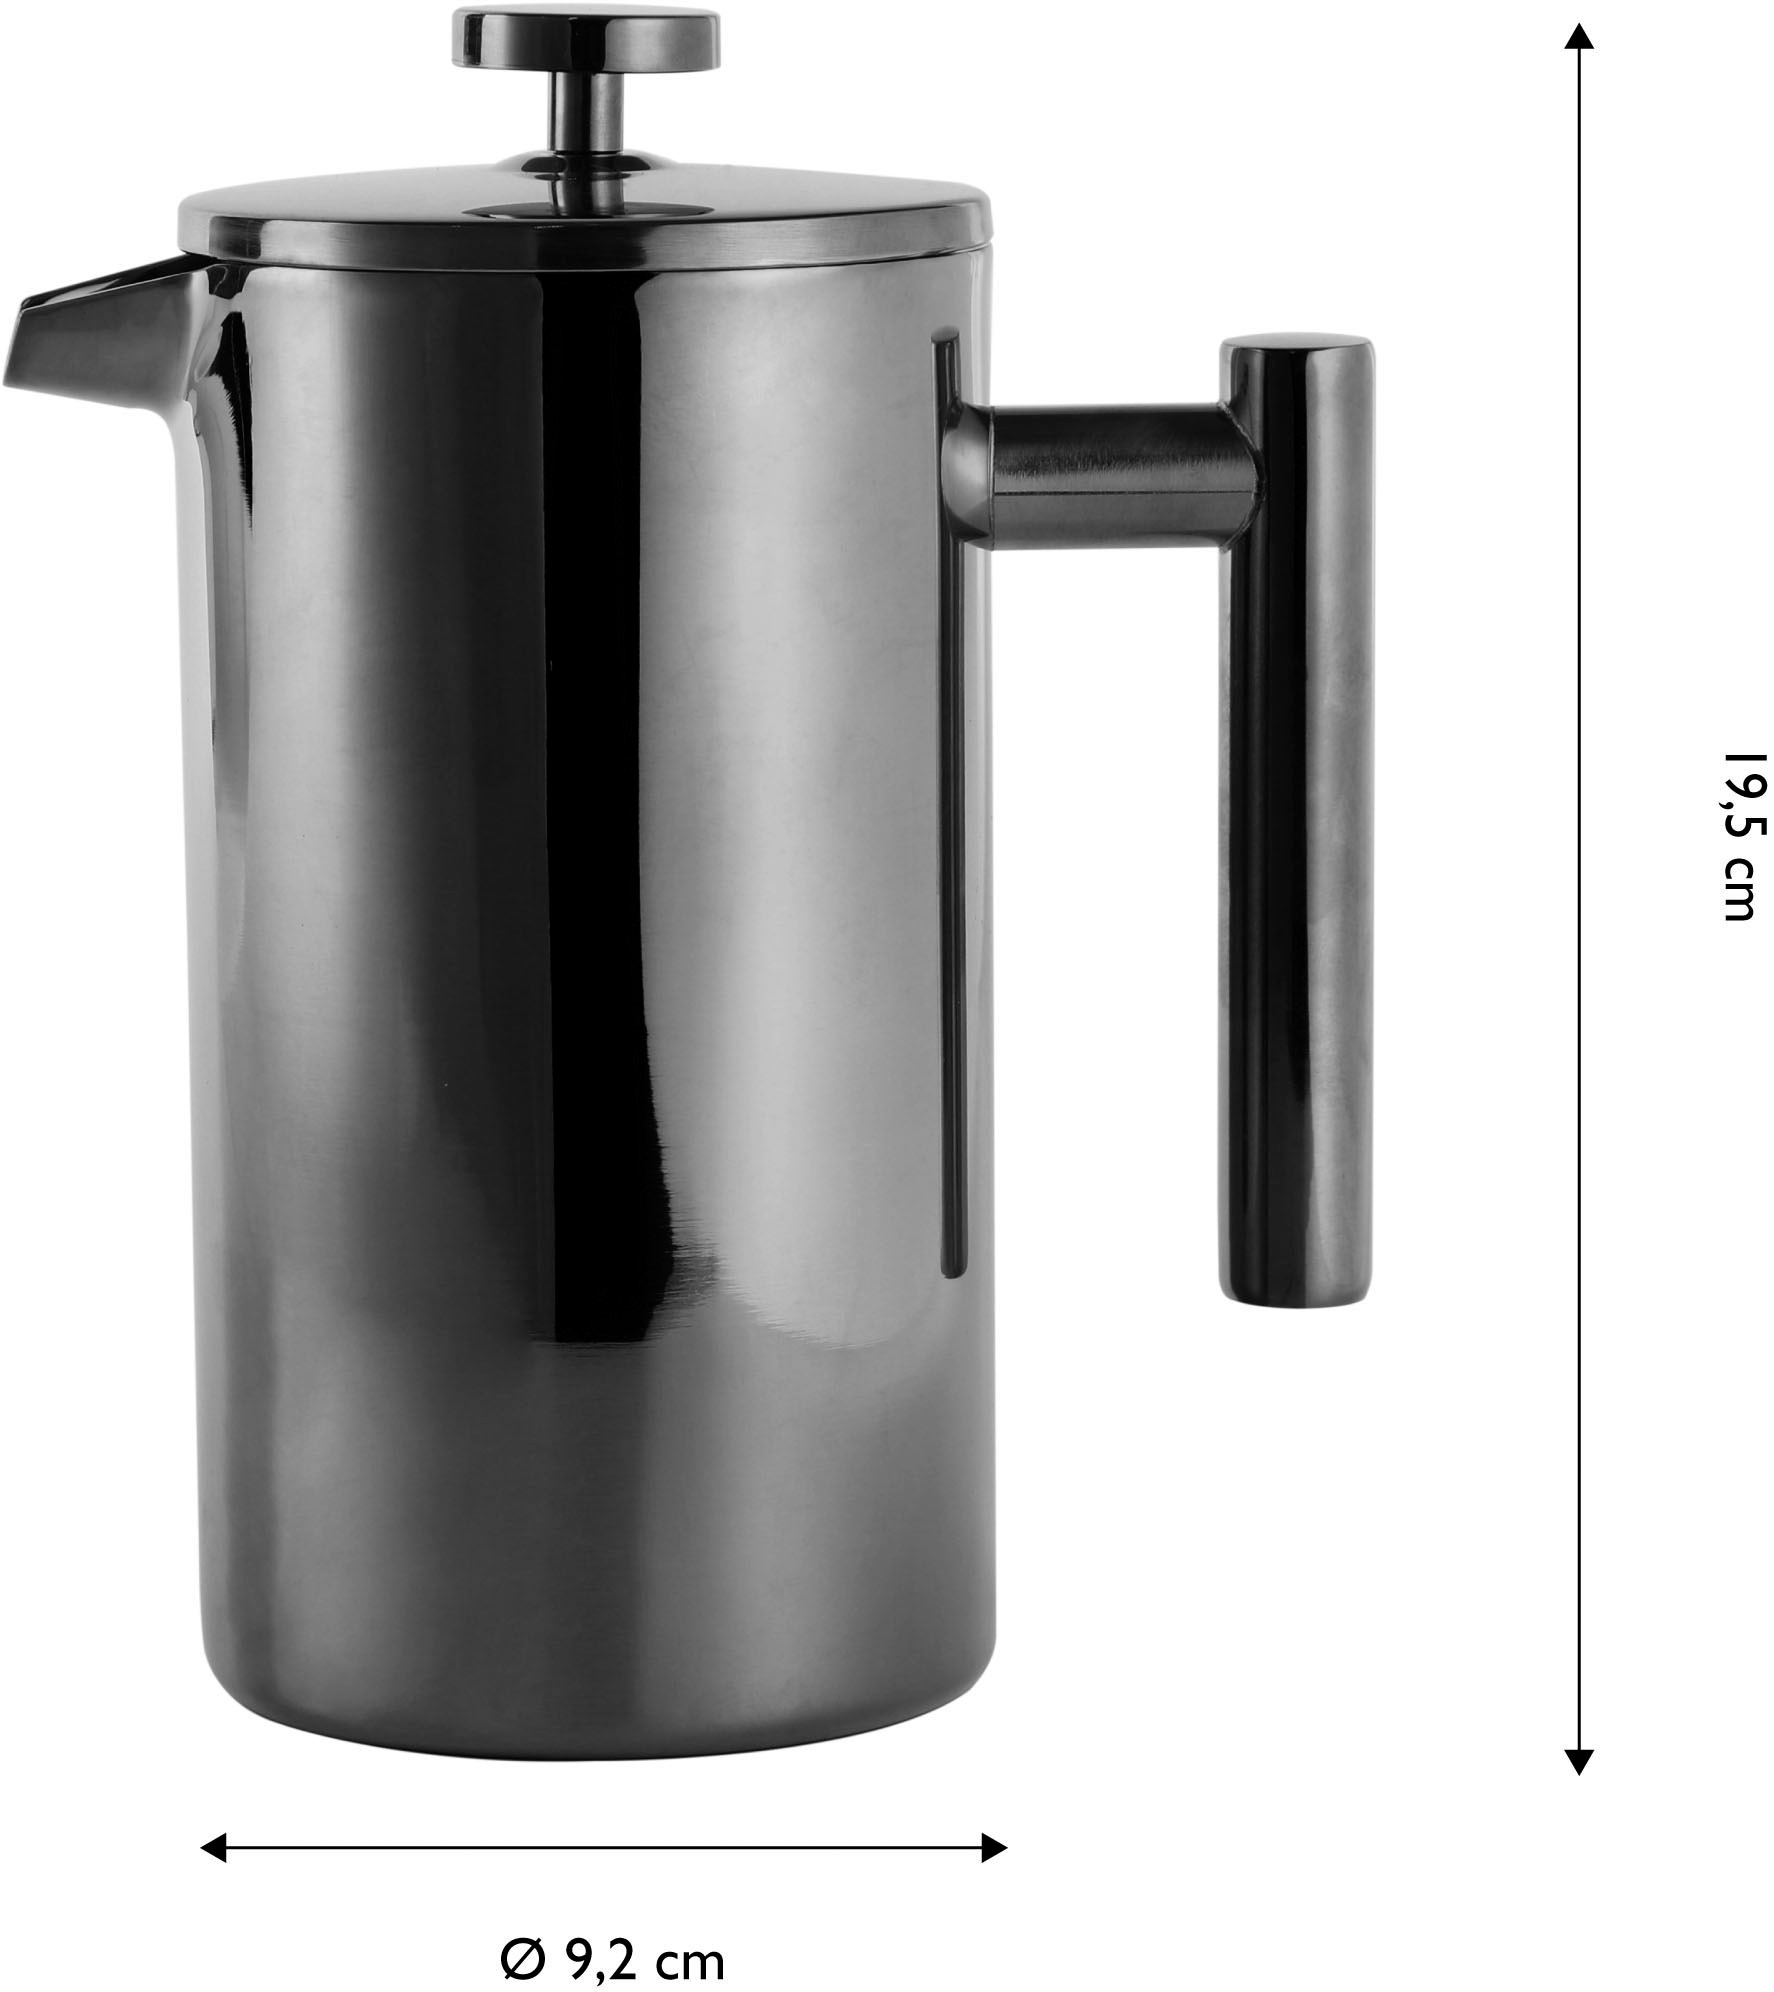 ECHTWERK French Press Kanne ».«, 0,8 l Kaffeekanne, Kaffeebereiter mit Pressfilter, doppelwandiger Edelstahl, isoliert